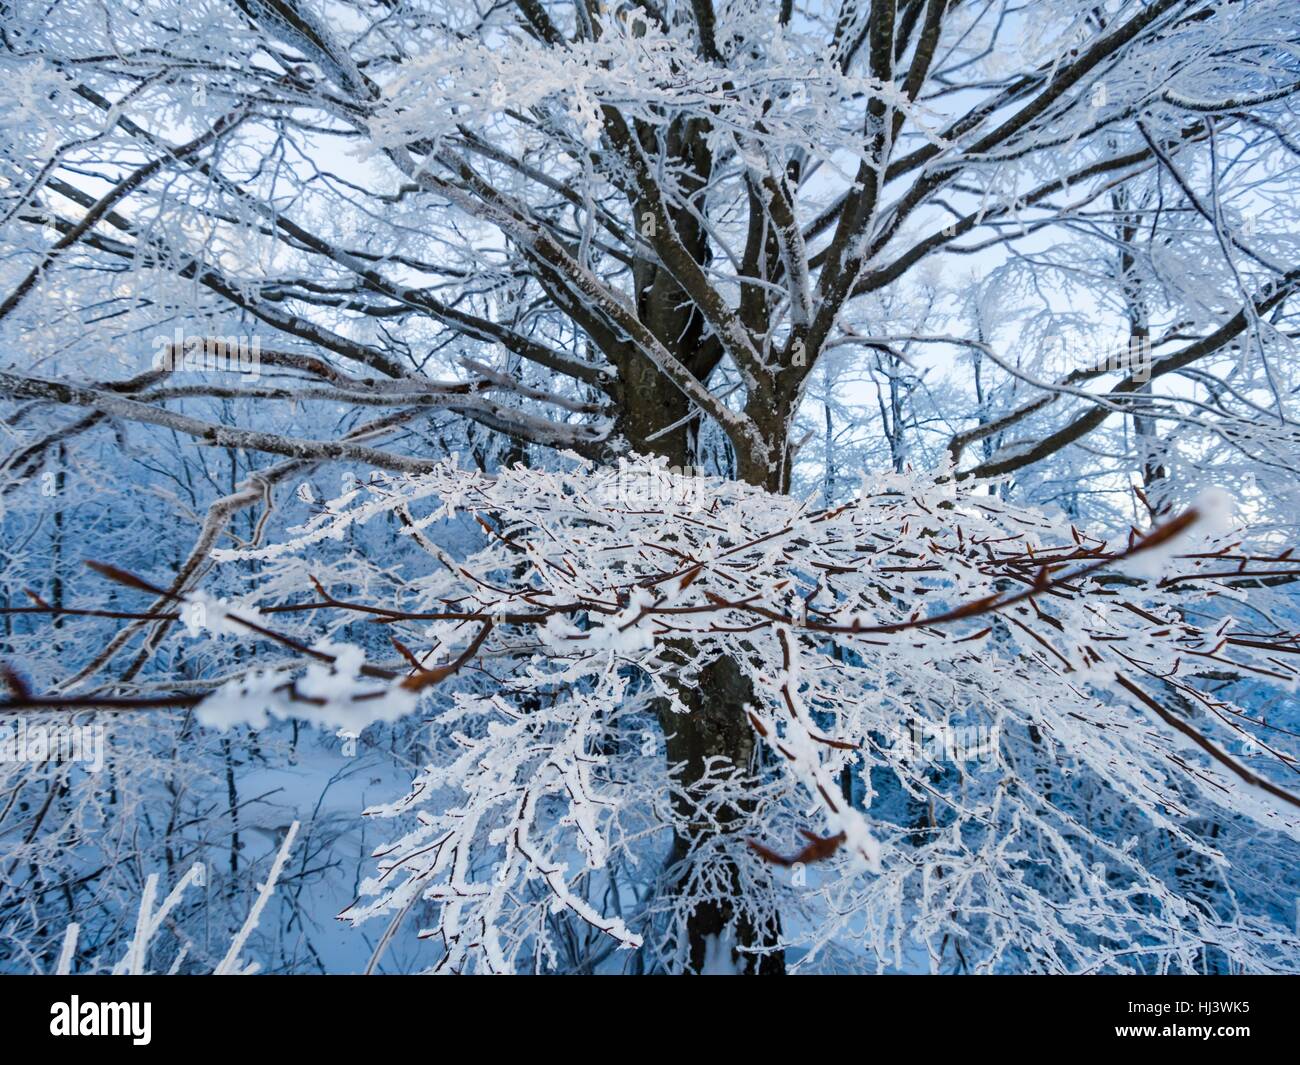 Arbre généalogique glaciale pleine de glace et de neige de glace horizontale de la direction générale des branches attachées à des branches d'arbre merveilleuses de la glace Banque D'Images